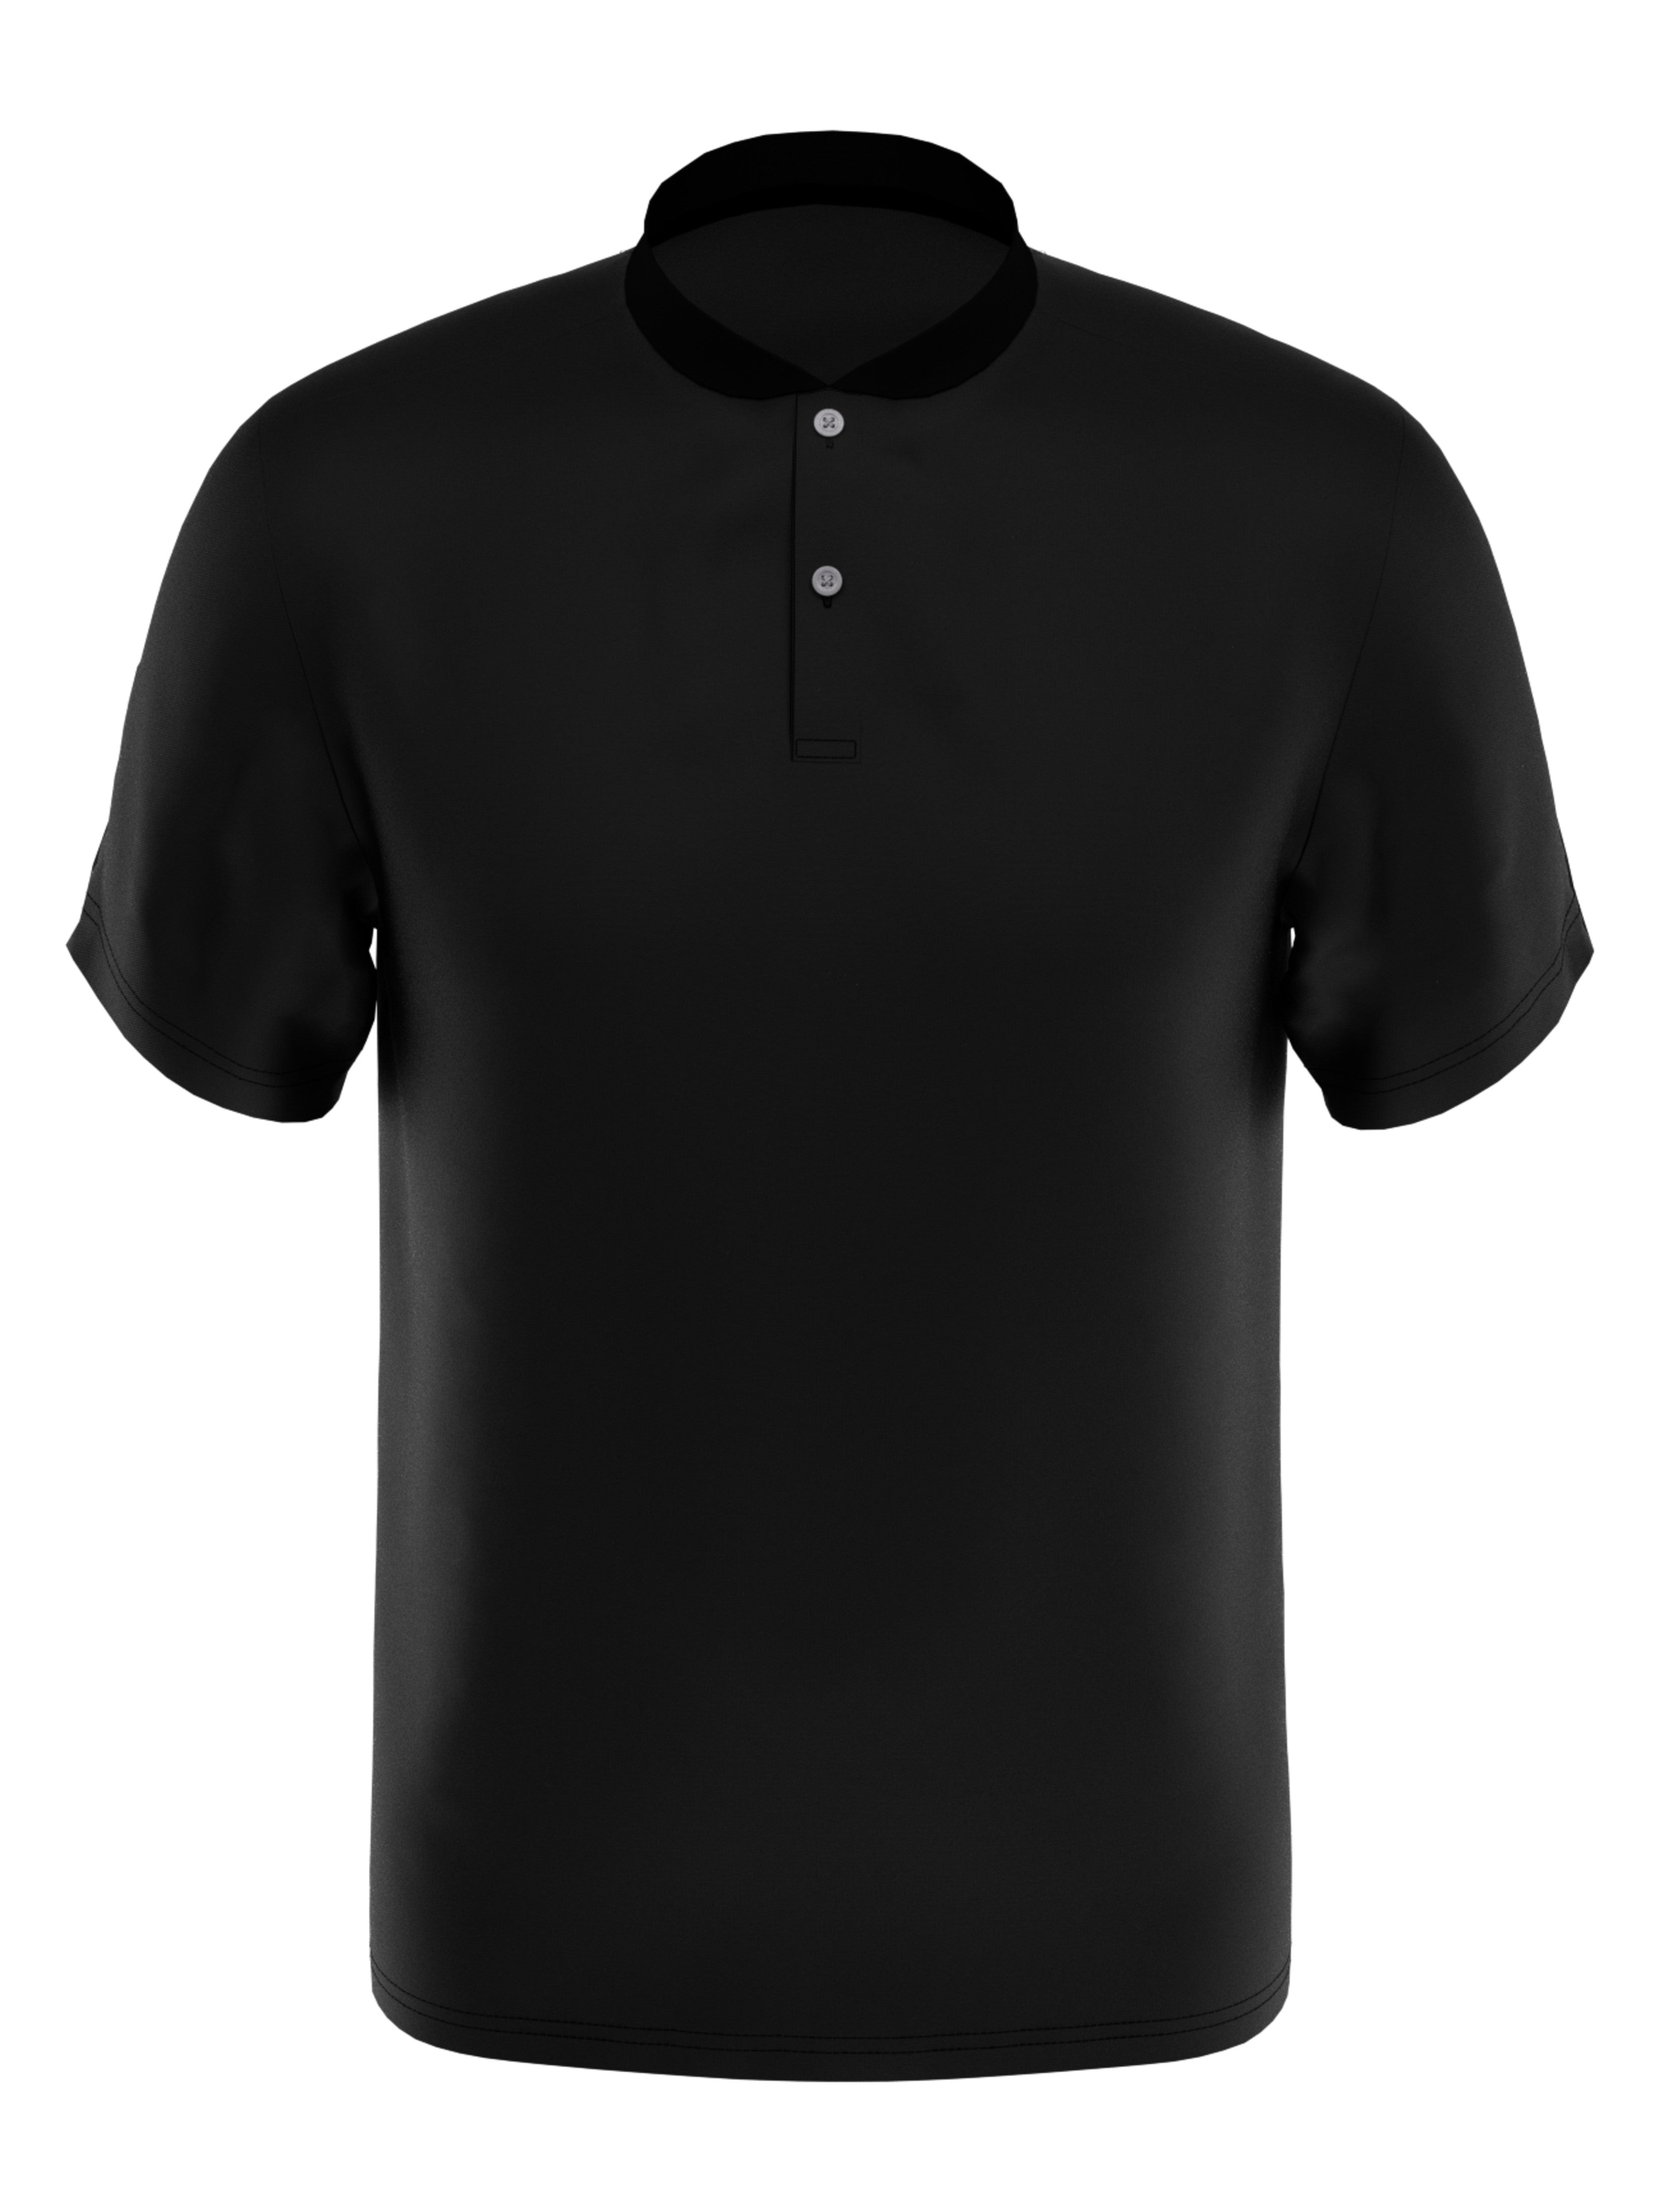 PGA TOUR Apparel Boys Edge Collar Pique Golf Polo Shirt, Size Large, Black, 100% Polyester | Golf Apparel Shop